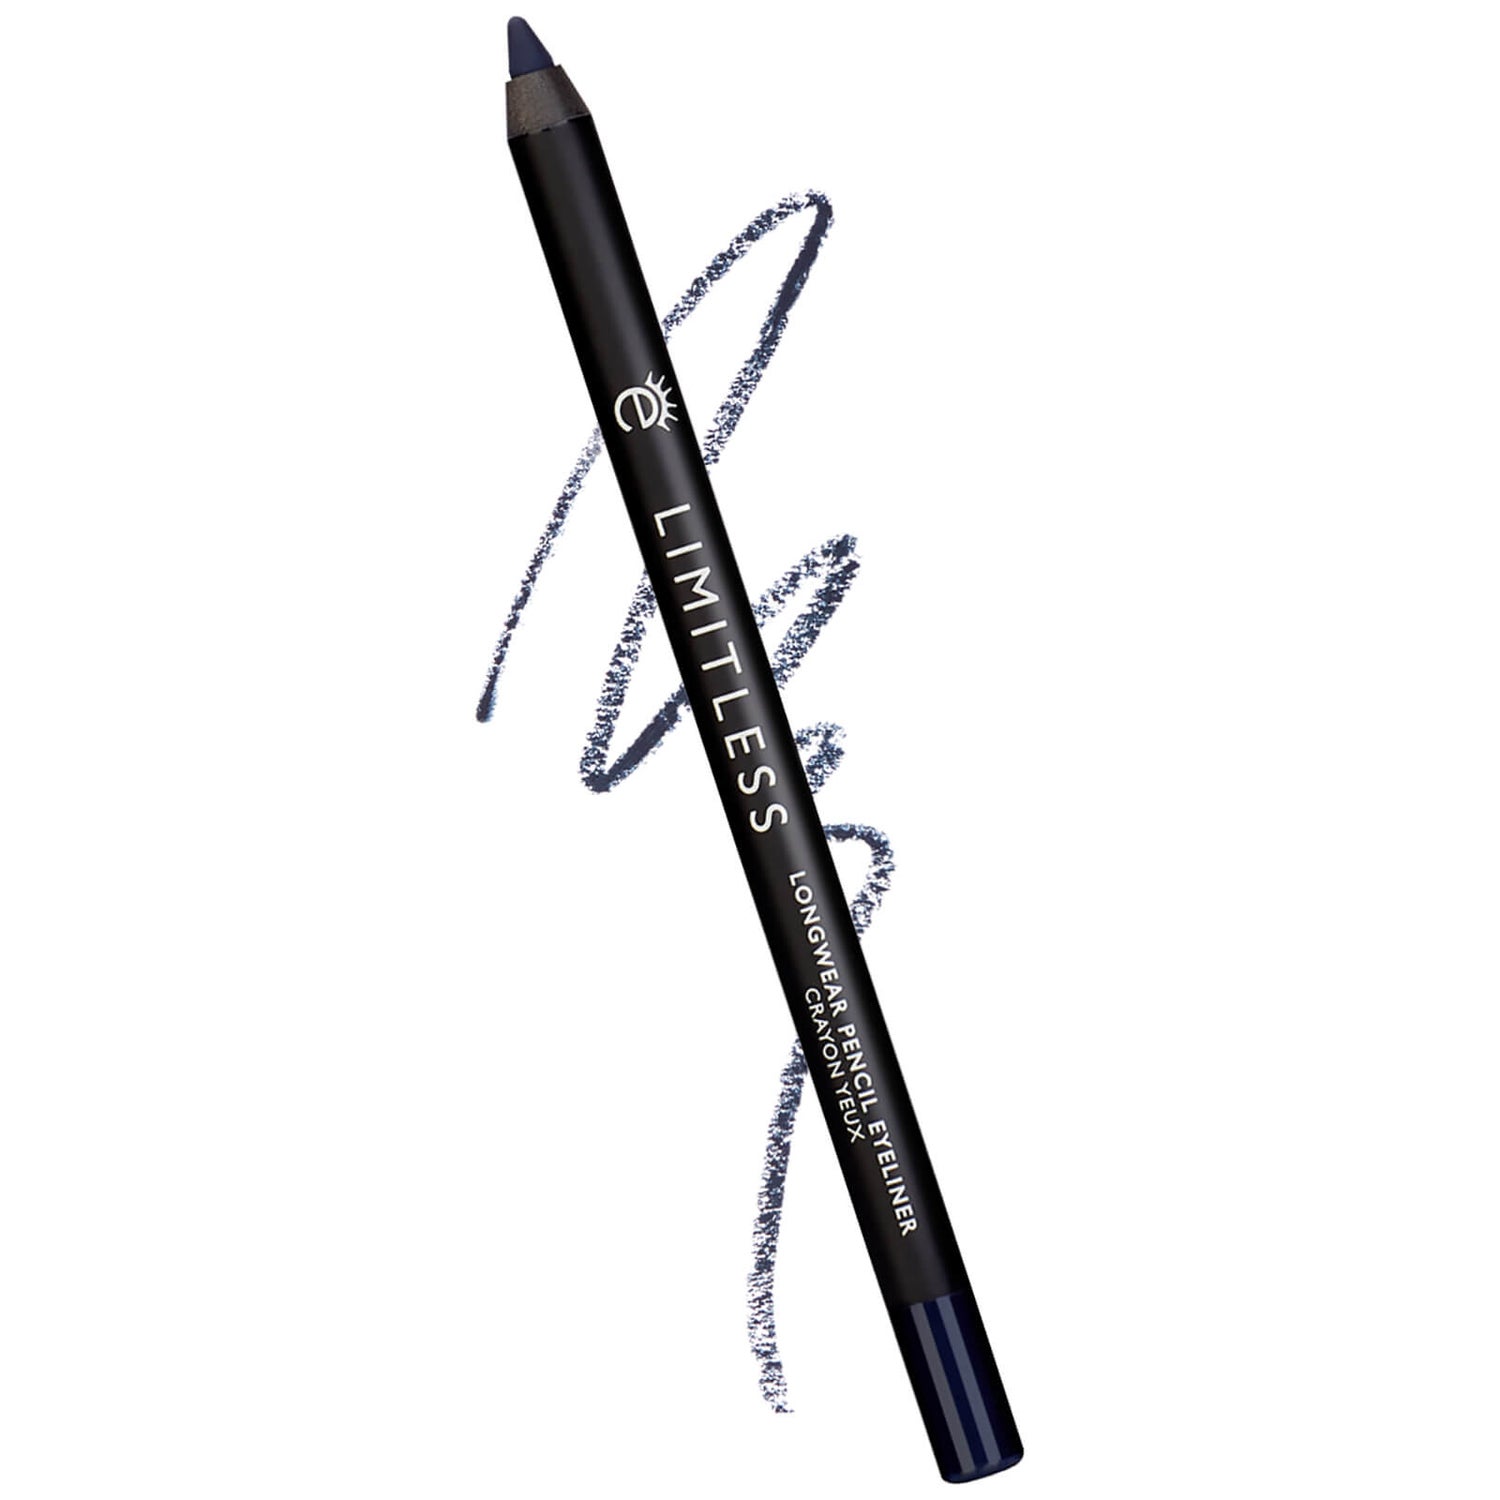 Eyeko Limitless Long-Wear Pencil Eyeliner (Varios tonos)